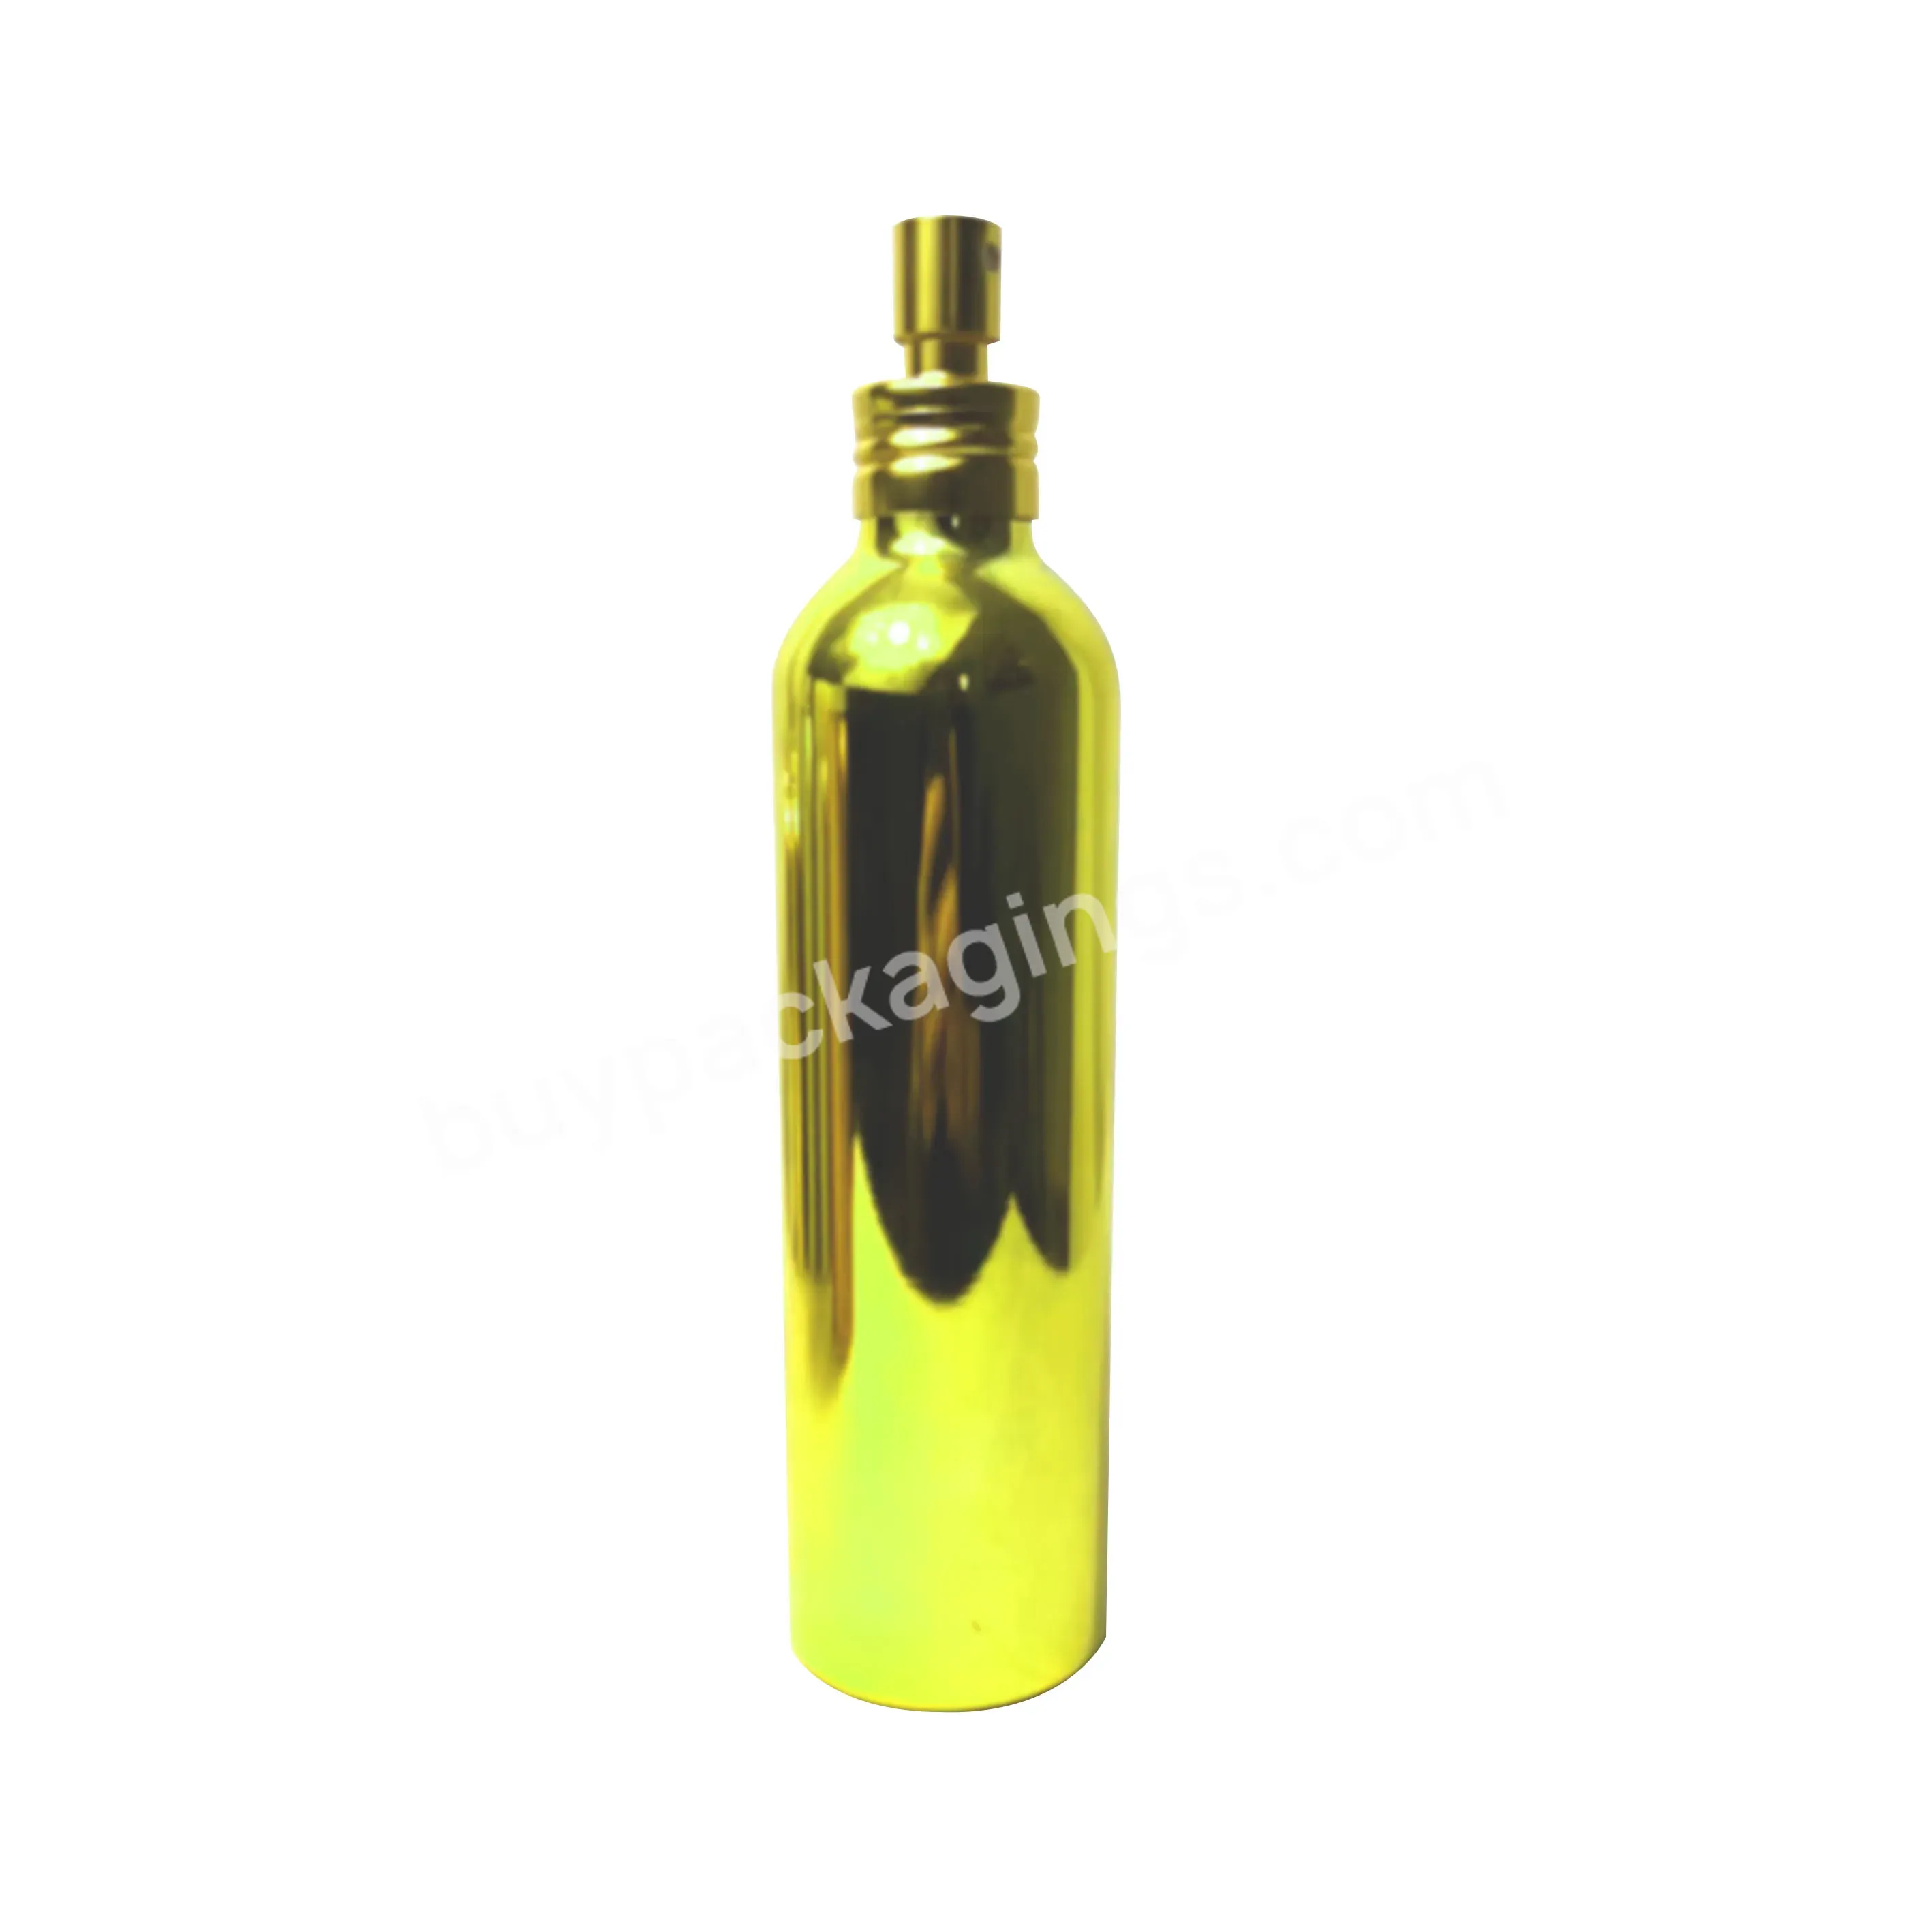 Gold Silver Aluminum Spray Bottle Custom Aluminum Cosmetic Bottle 30ml 60ml 120ml - Buy Aluminum Cosmetic Bottle,Aluminum Spray Bottle,Aluminum Bottle 30ml 60ml 120ml.